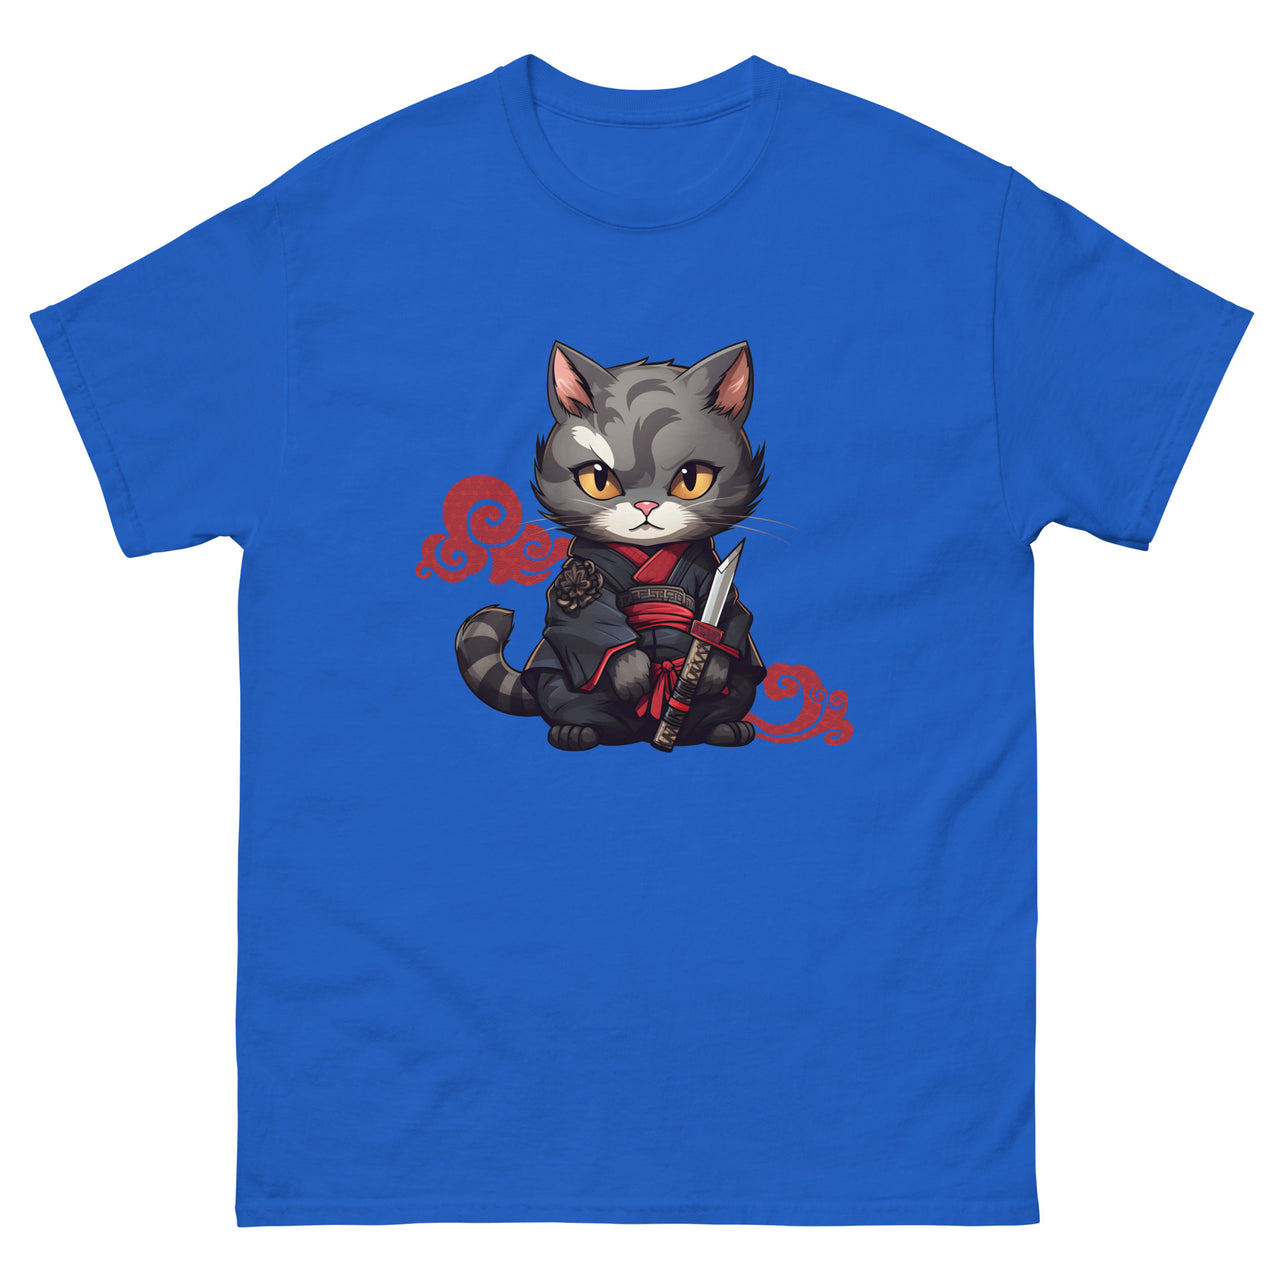 Katana Selfie: Warrior Cat's Photo Op T-Shirt